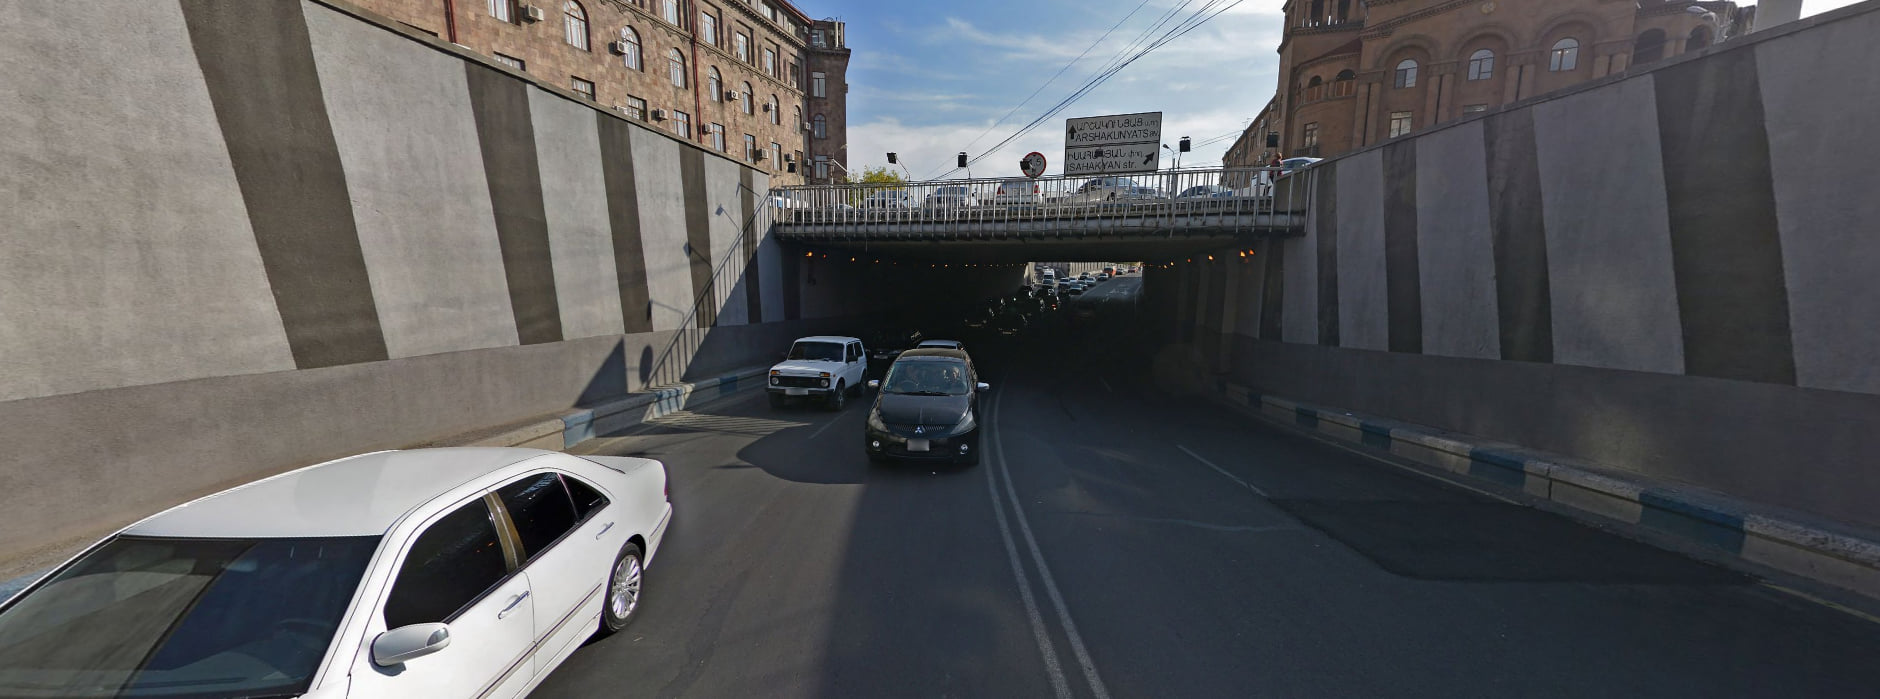 Движение по тоннелю на пересечении улицы Чаренца и Гетара будет временно прекращено 